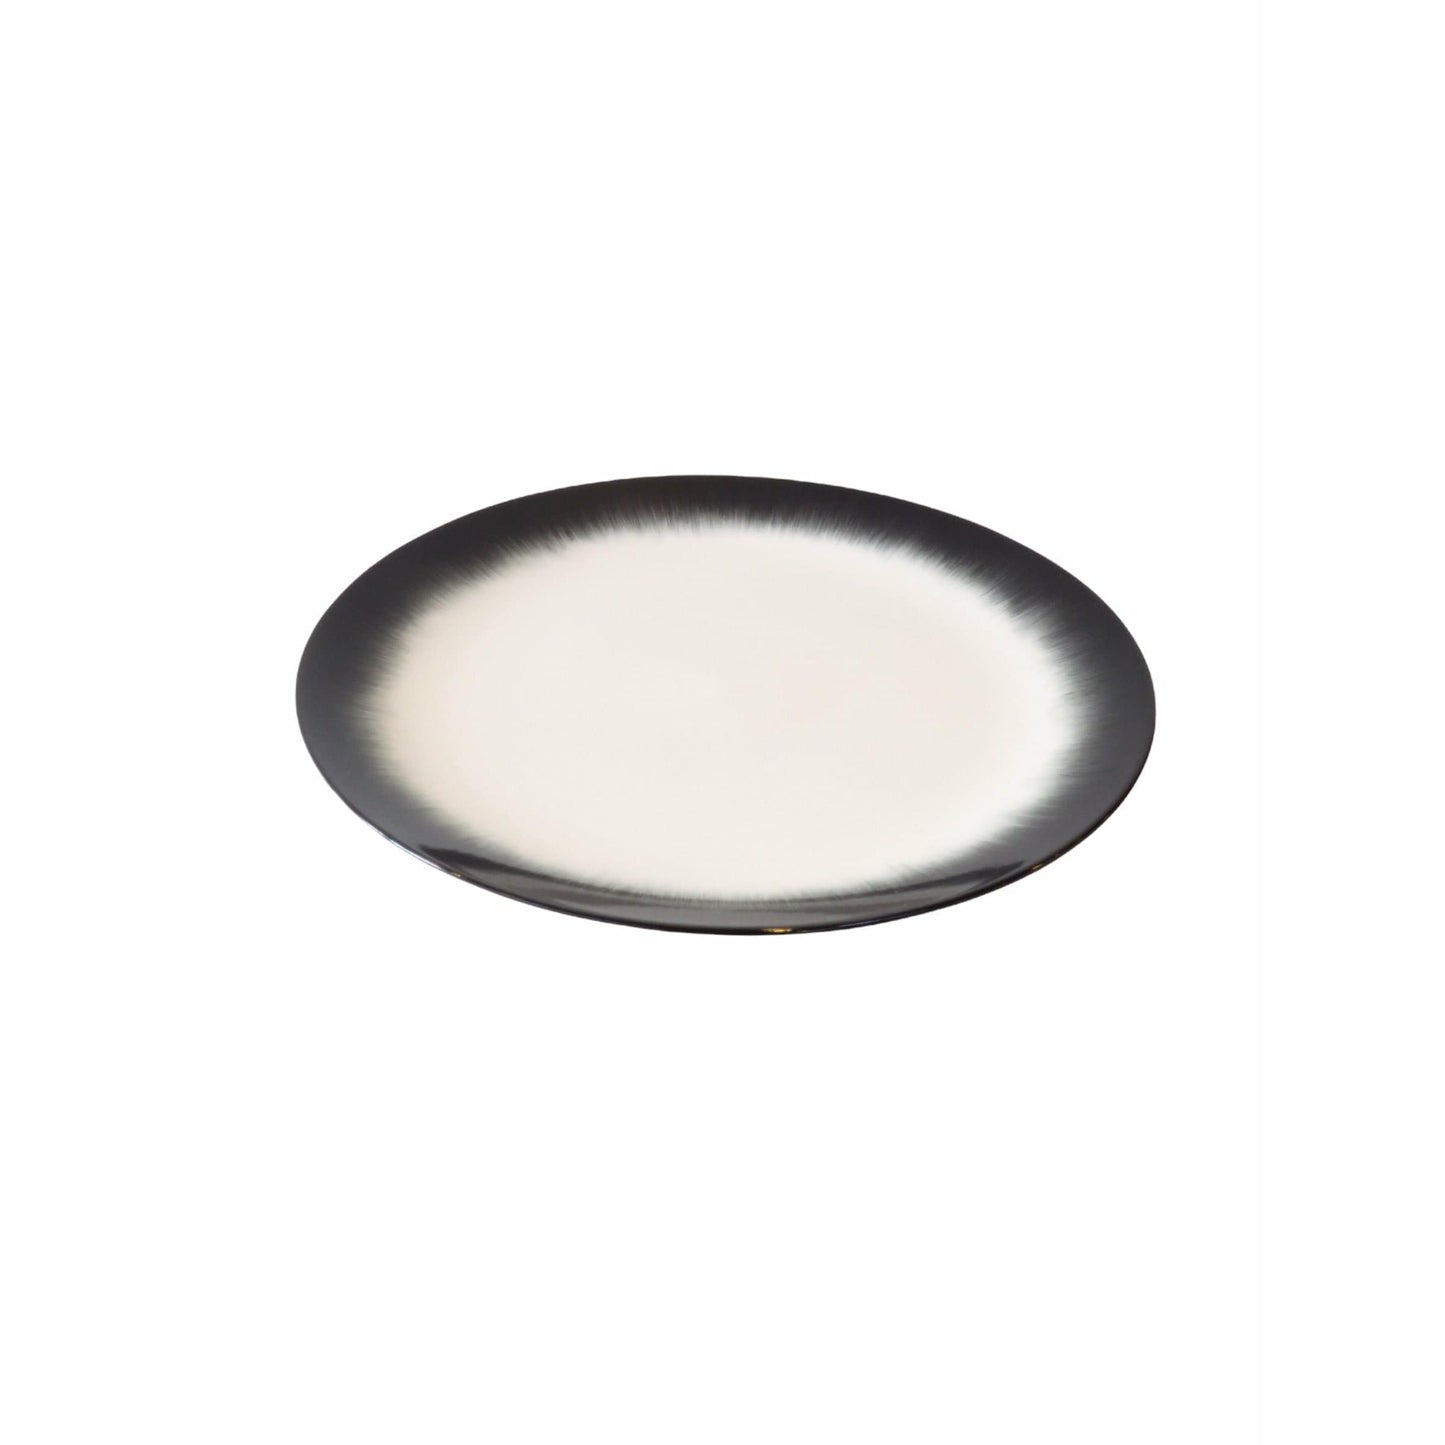 Ann Demeulemeester Home Plates 17.5 centimeter / Off-white & black / Porcelain Ann Demeulemeester for Serax 17.5 cm plates (set of two)